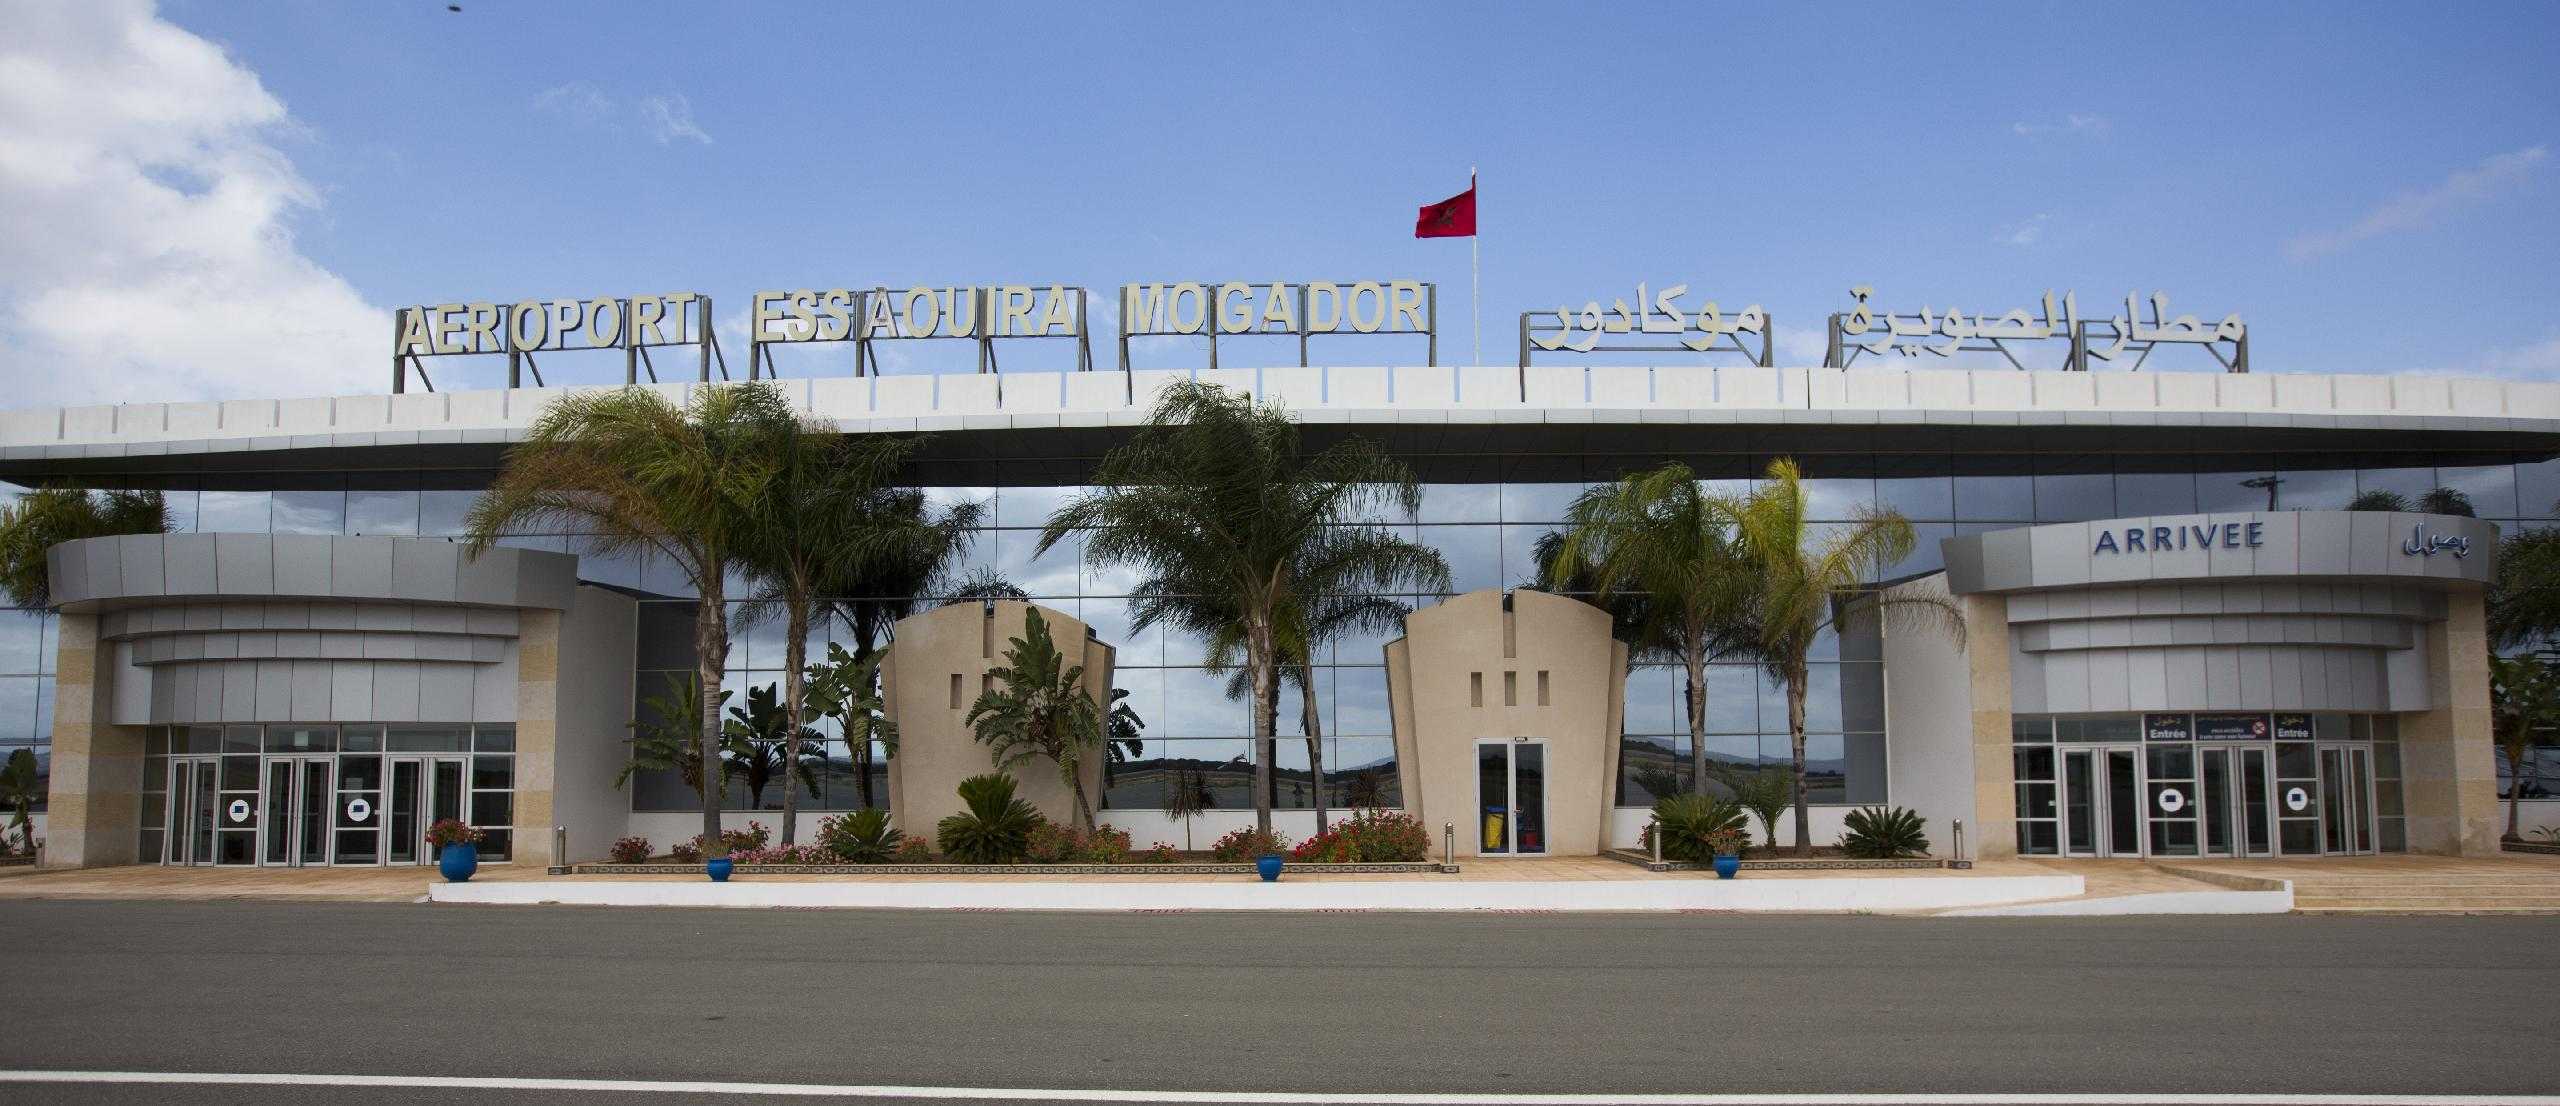 Aéroport Essaouira Mogador